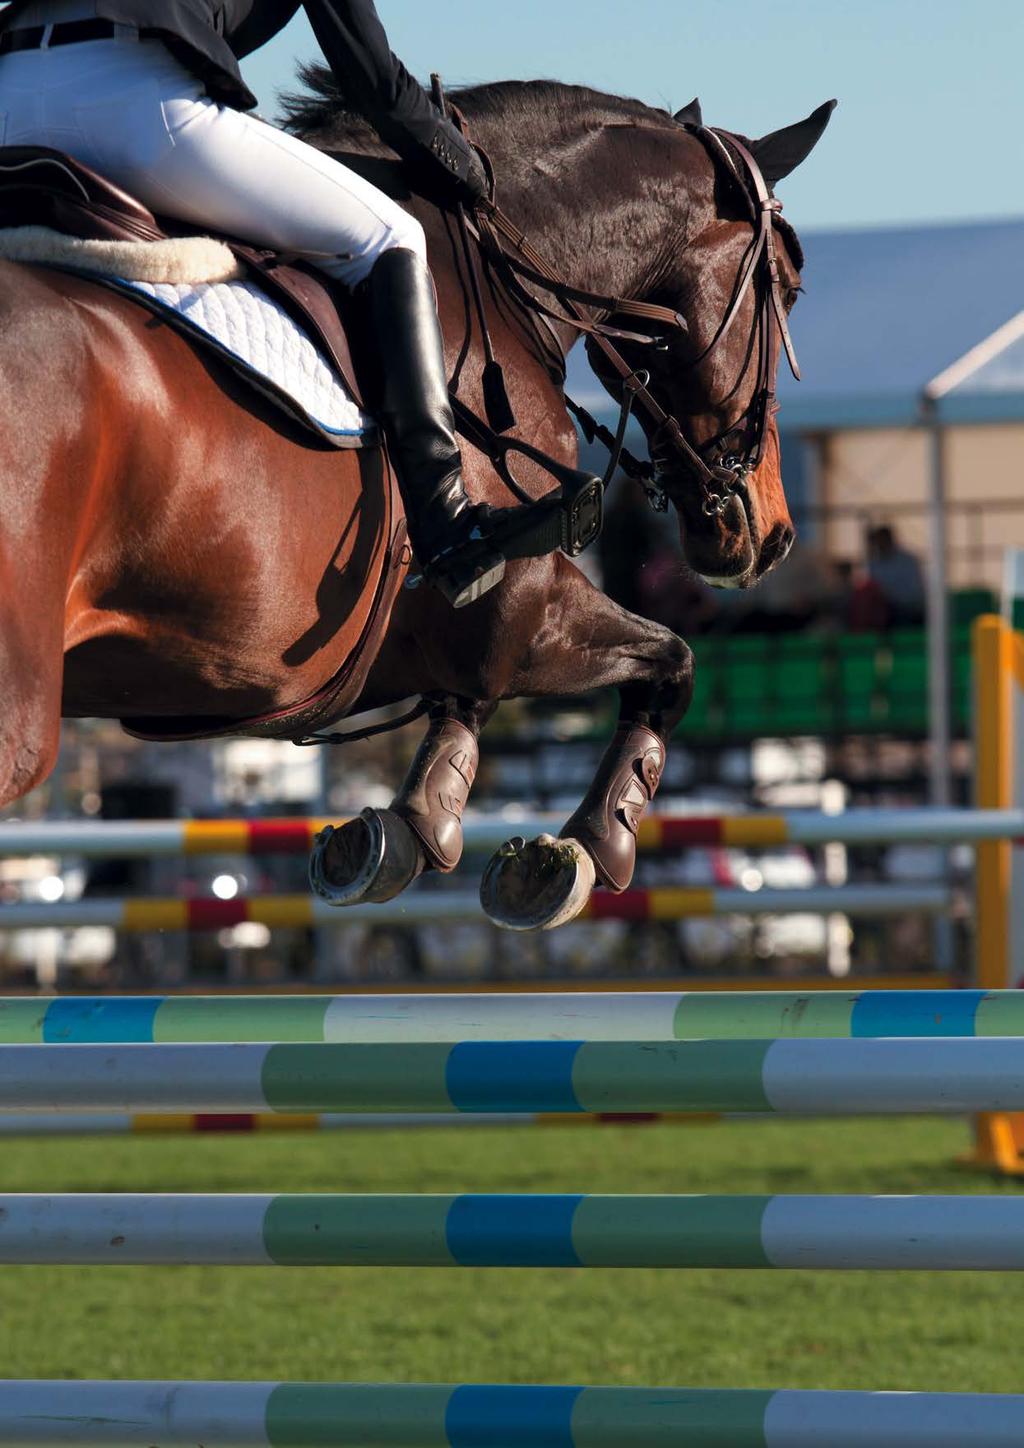 Spor Atları Ürünleri Engel atlama, konkur komple, dresaj ve polo disiplinlerinde yer alan performans atları idman ve müsabaka için çok özel bir diyete ihtiyaç duyarlar.